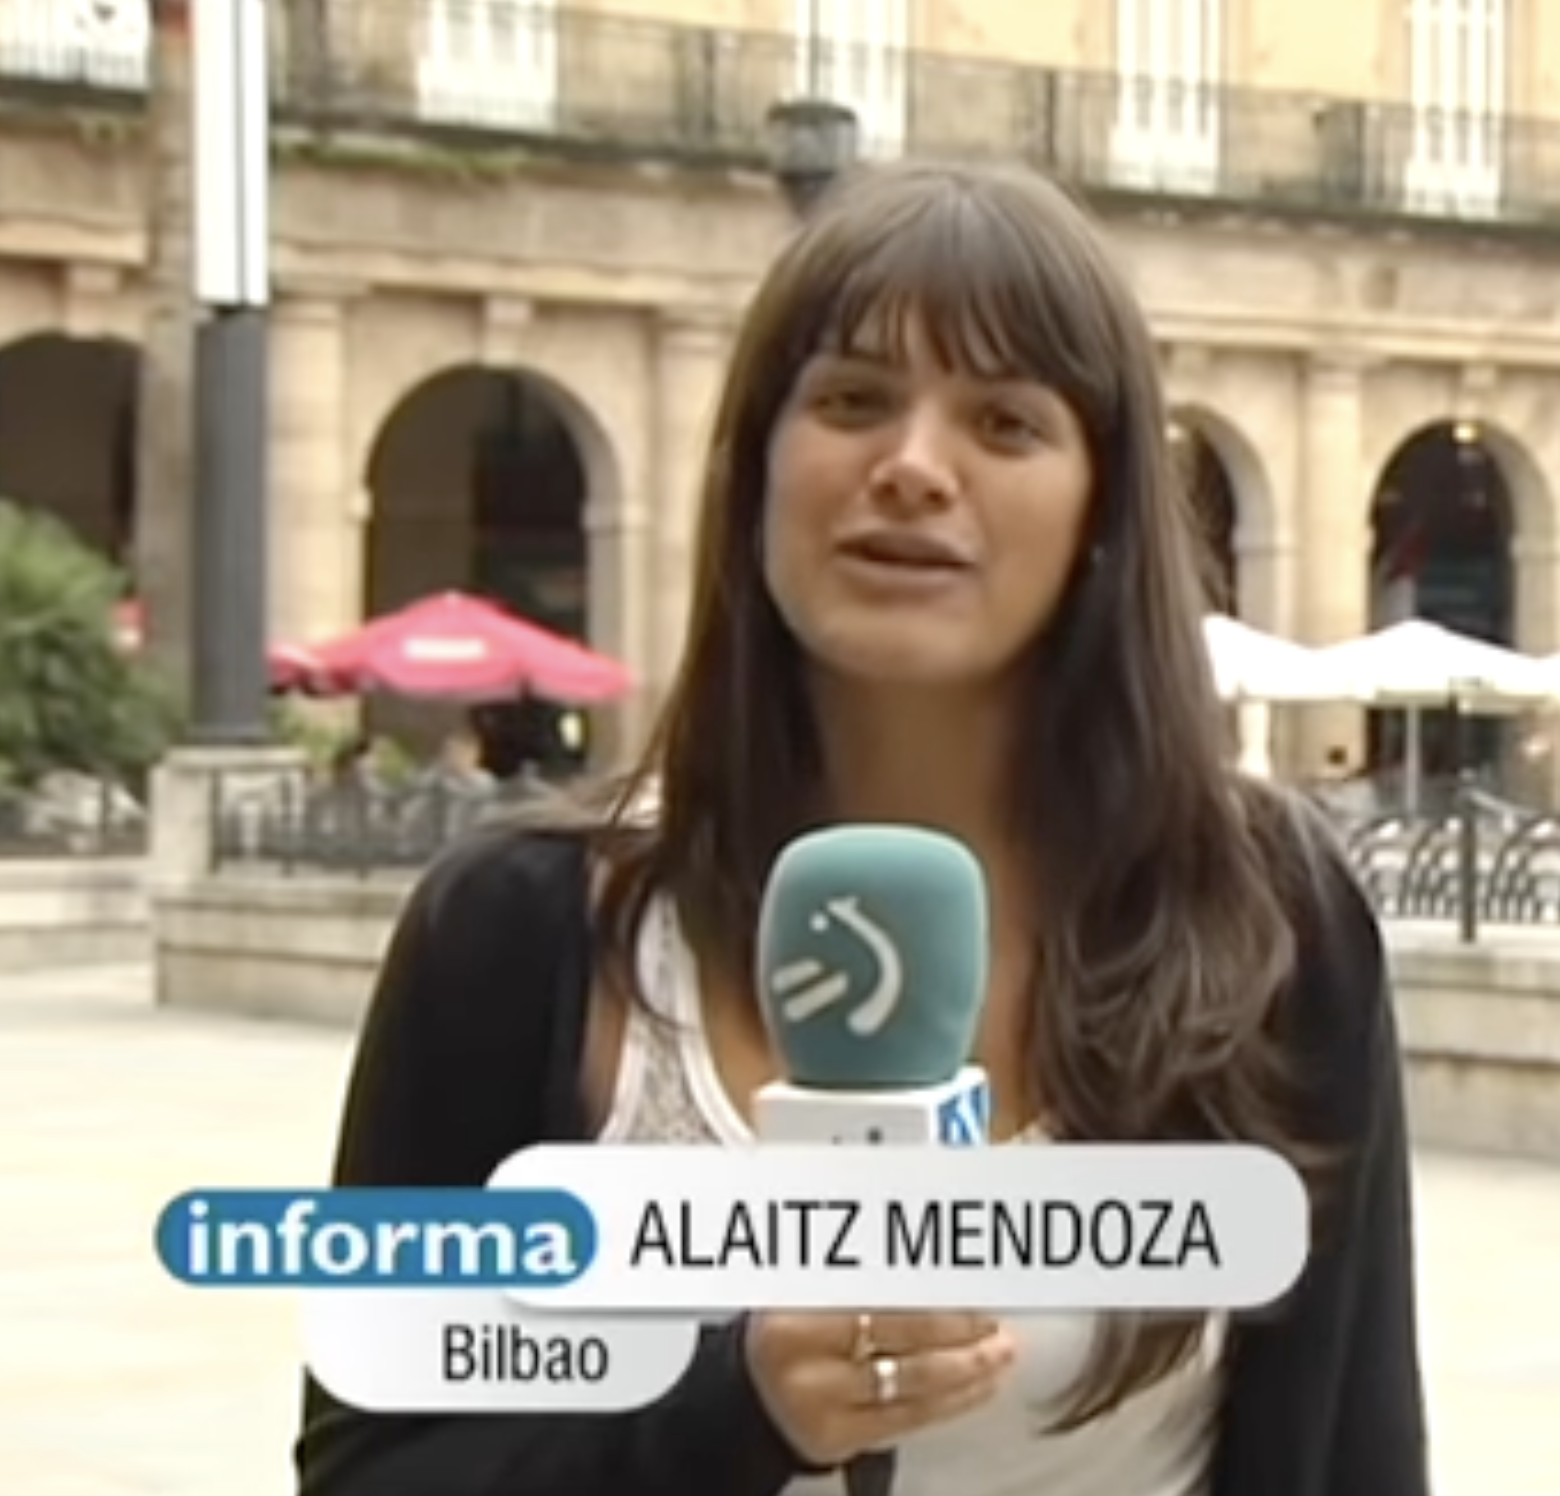 Teleberri ETB2 Semana Grande Bilbao